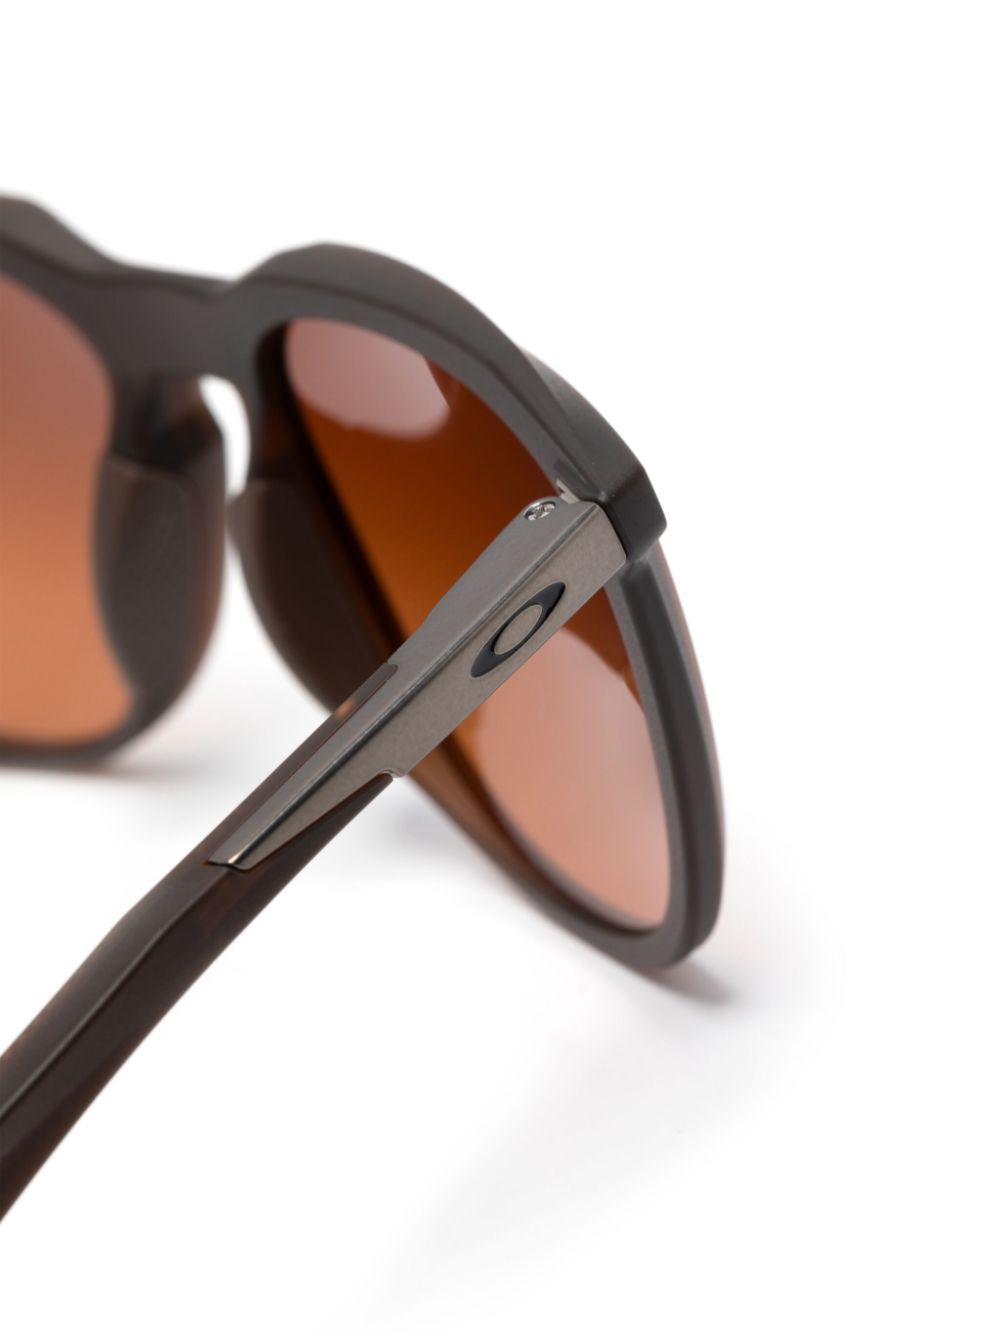 Thurso square-frame sunglasses<BR/><BR/><BR/>